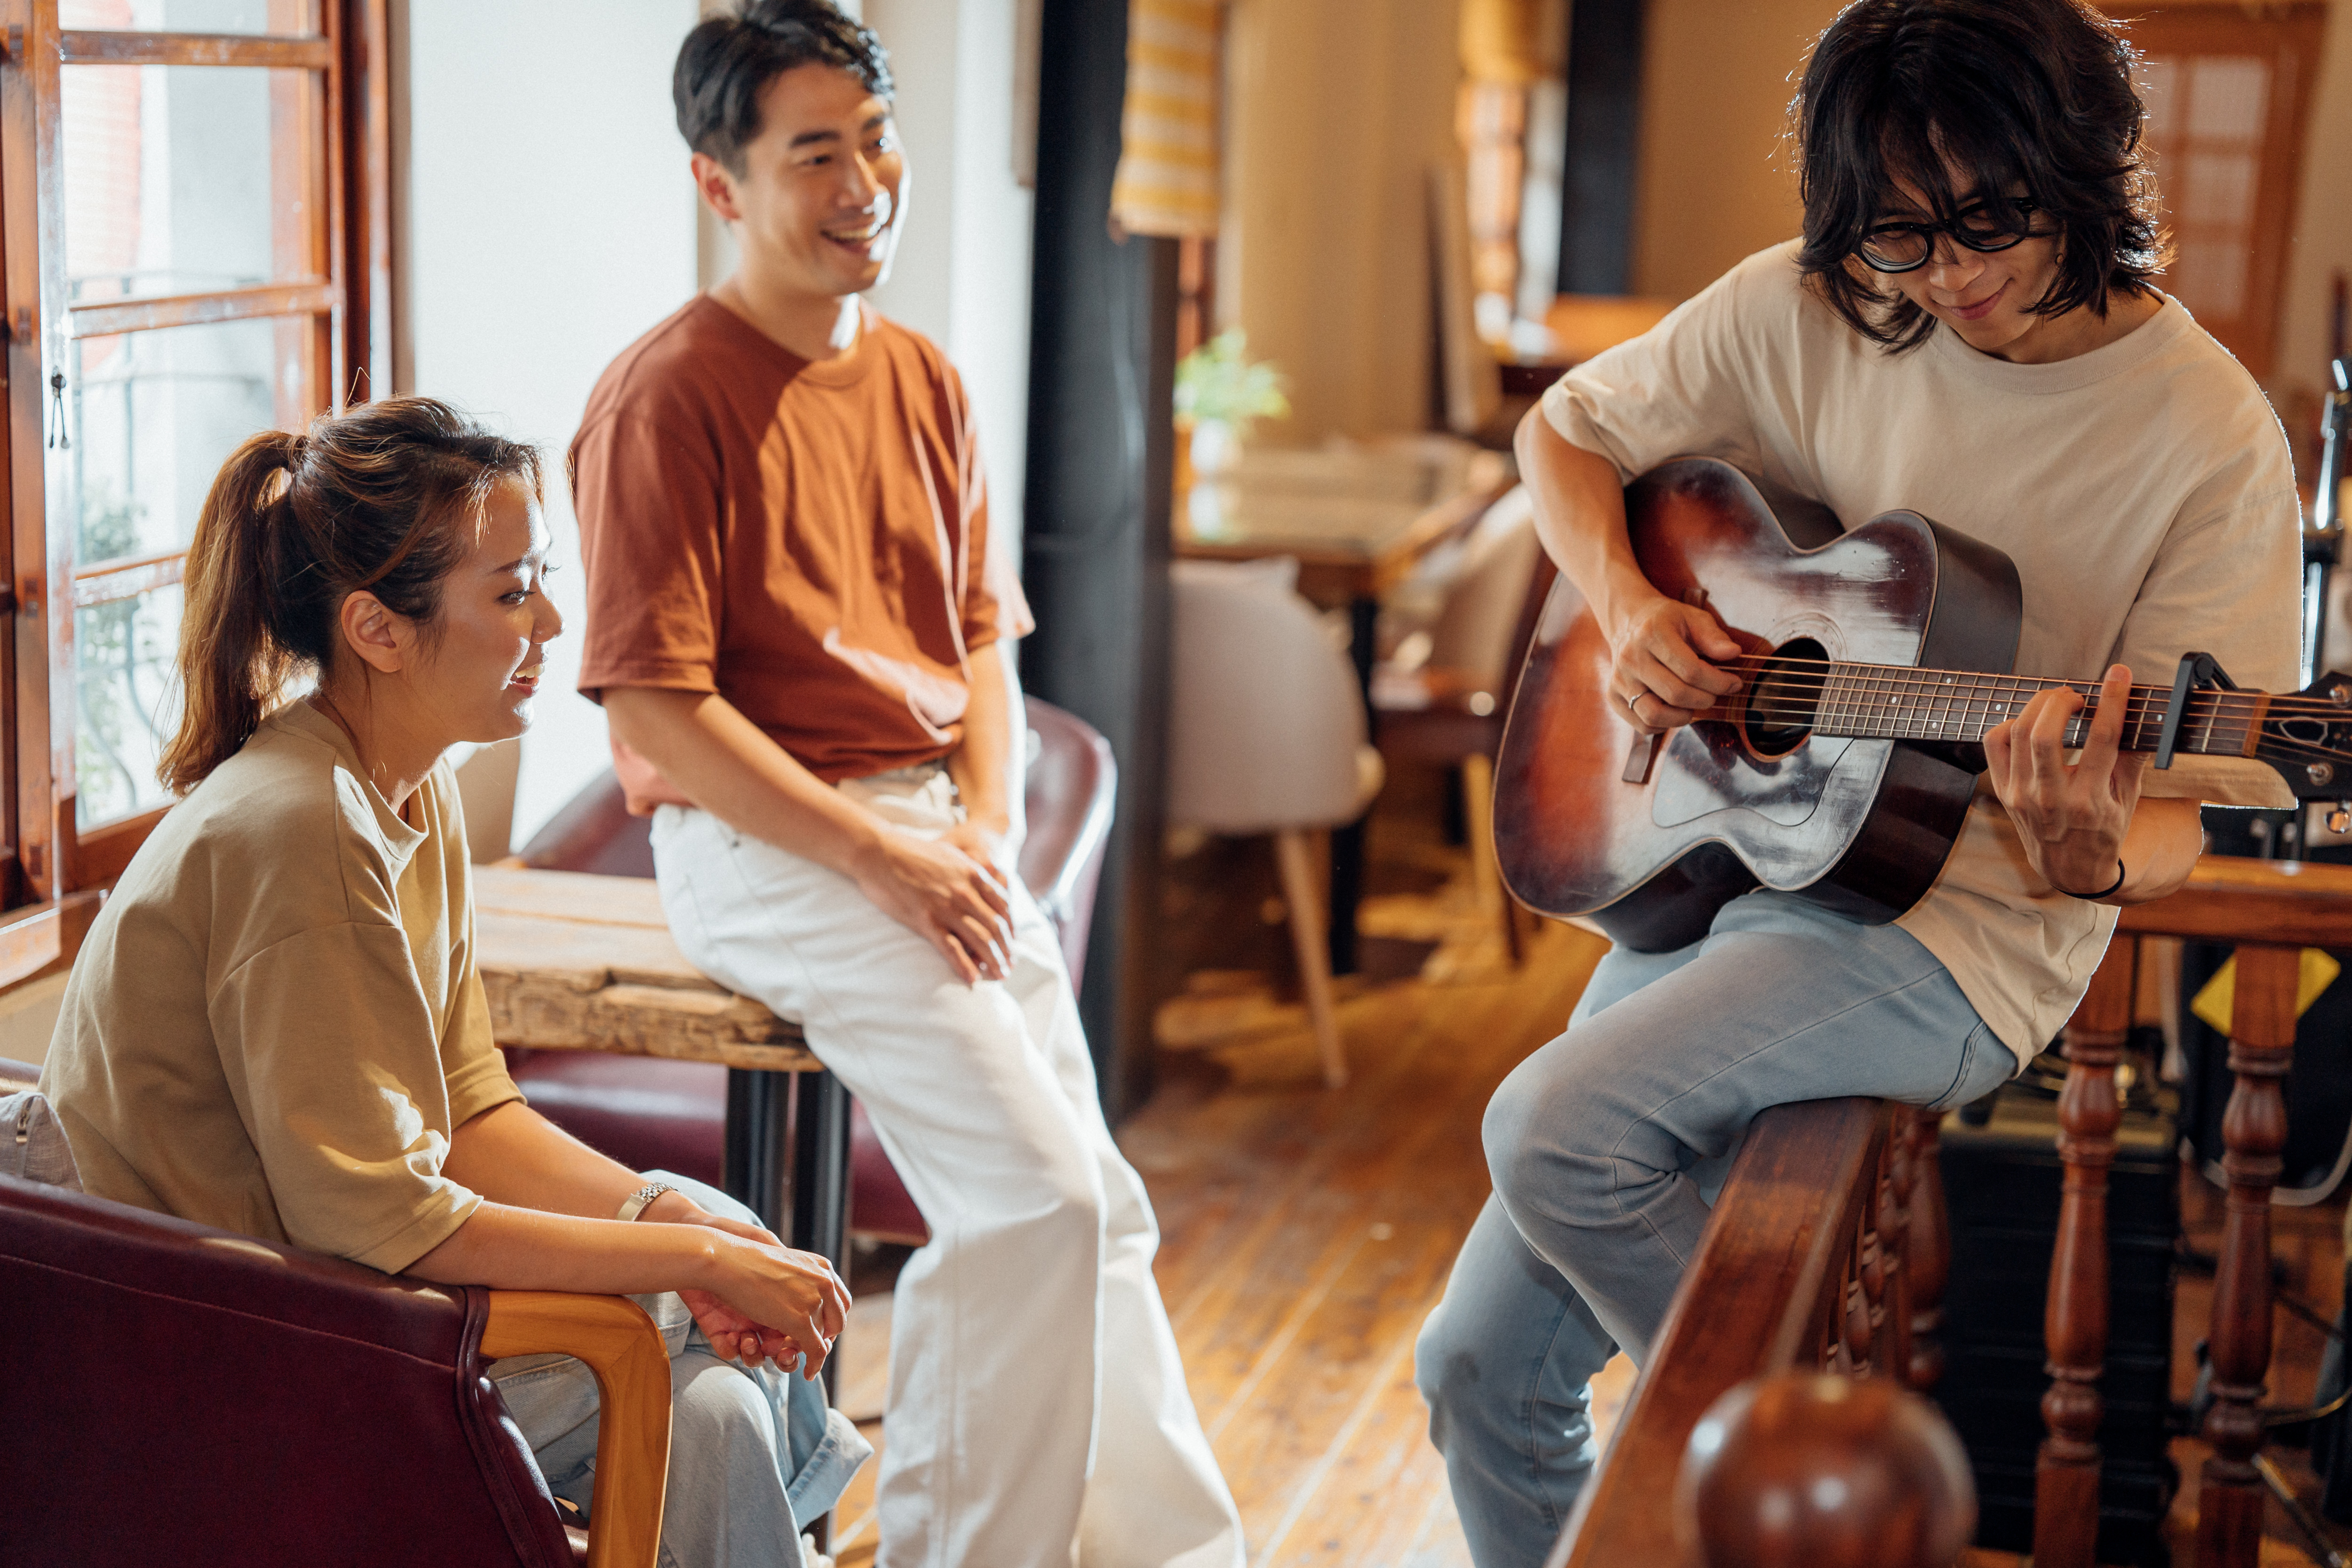 「等待中的讚美」中有不同風格的音樂，希望藉由年輕人可以接受的音樂表現，連結並喚起年輕基督徒對信仰的回應。